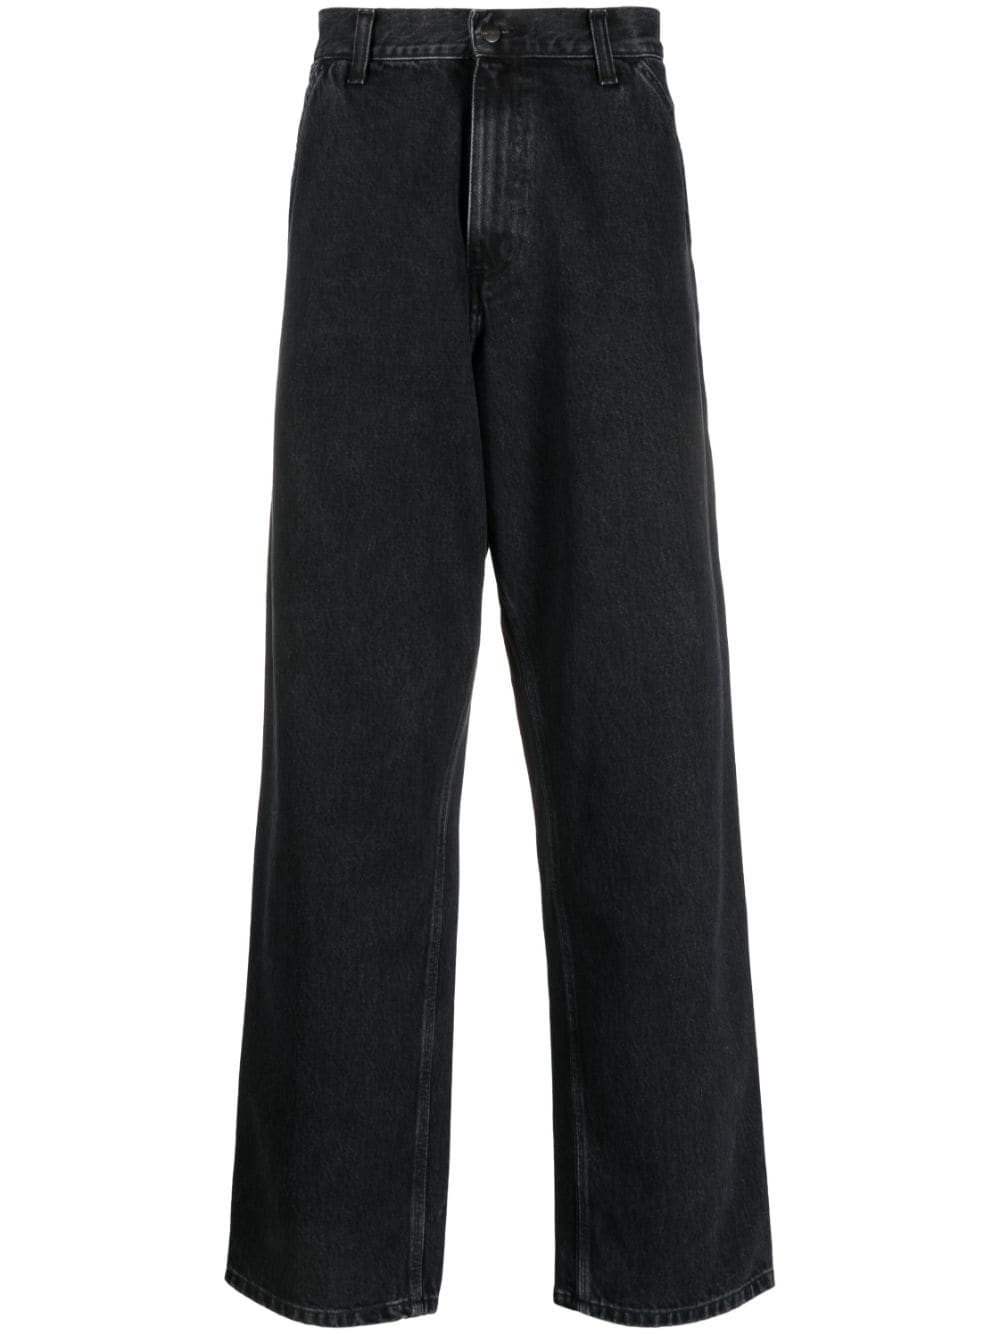 Carhartt WIP Halbhohe Jeans mit lockerem Schnitt - Schwarz von Carhartt WIP